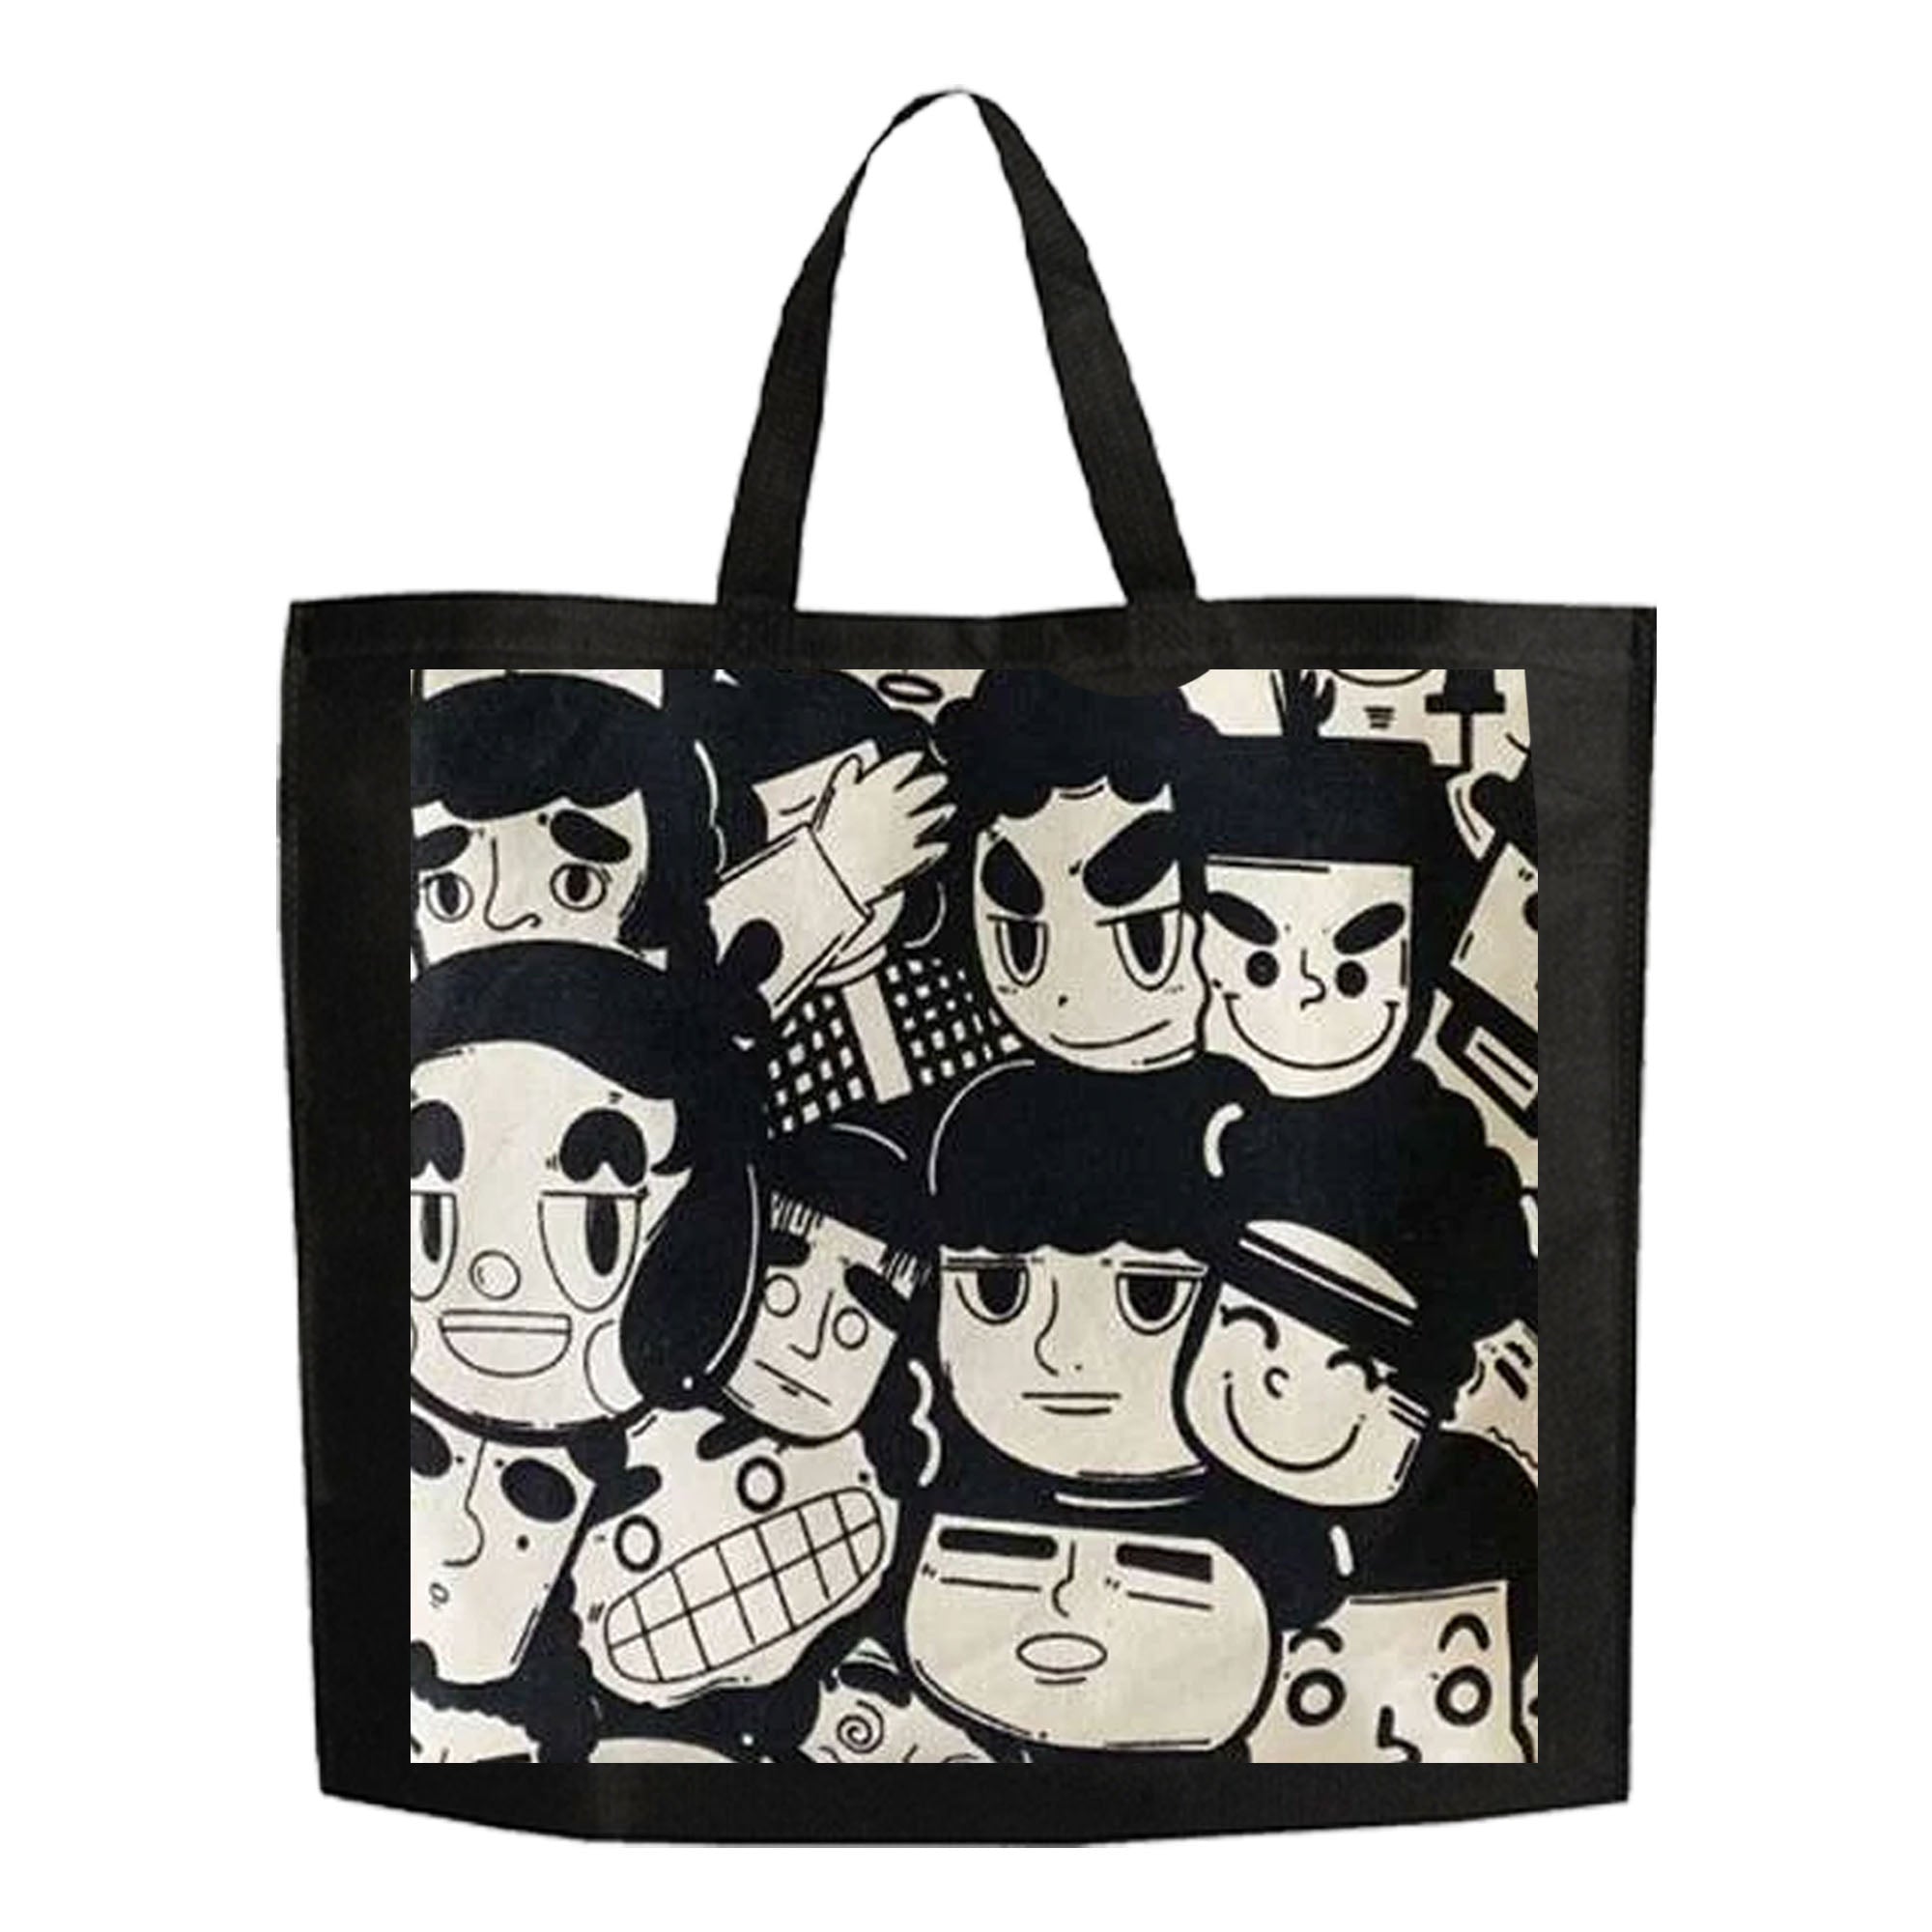 PNA Reusable Non-Woven Shopper Bag - Cartoon Design